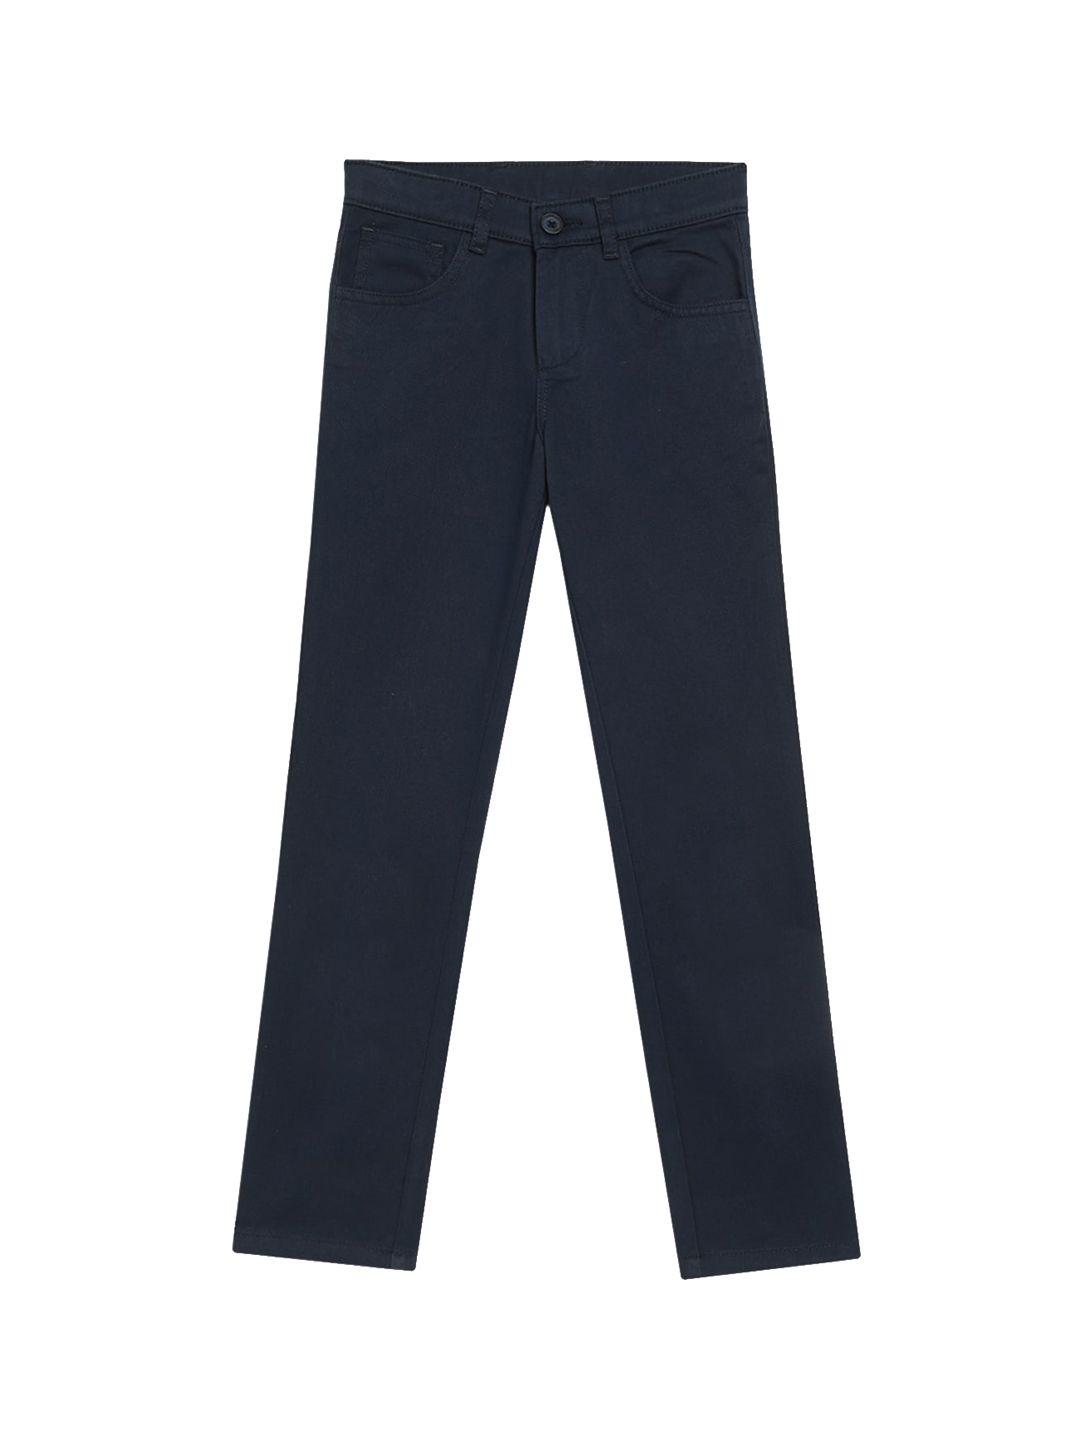 cantabil-boys-navy-blue-trousers